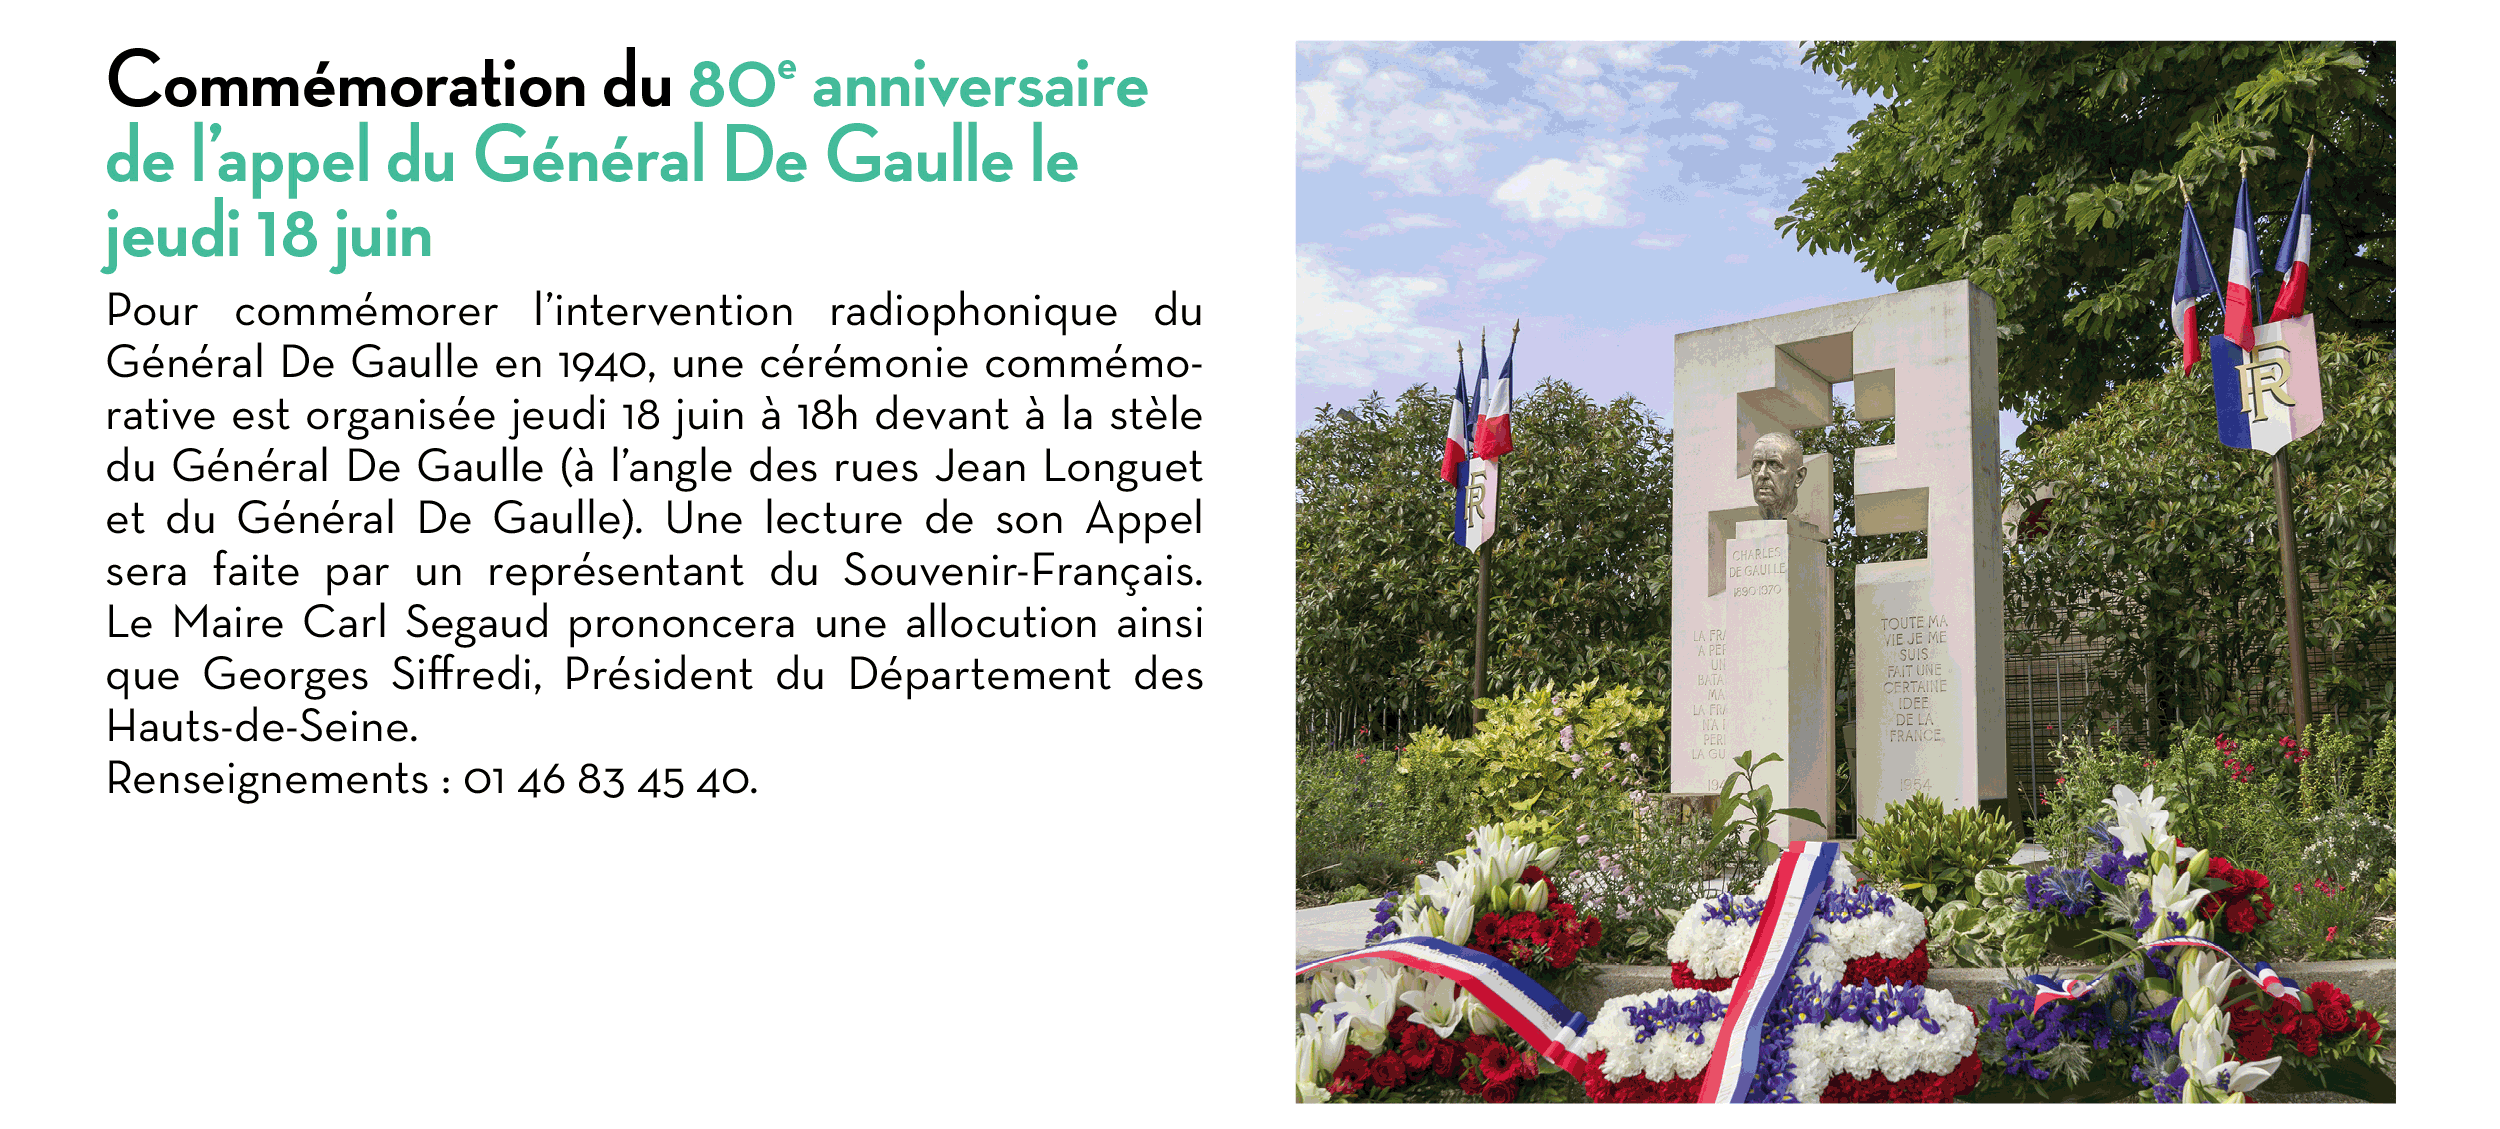 Commémoration du 80e anniversaire de l’appel du Général De Gaulle le jeudi 18 juin